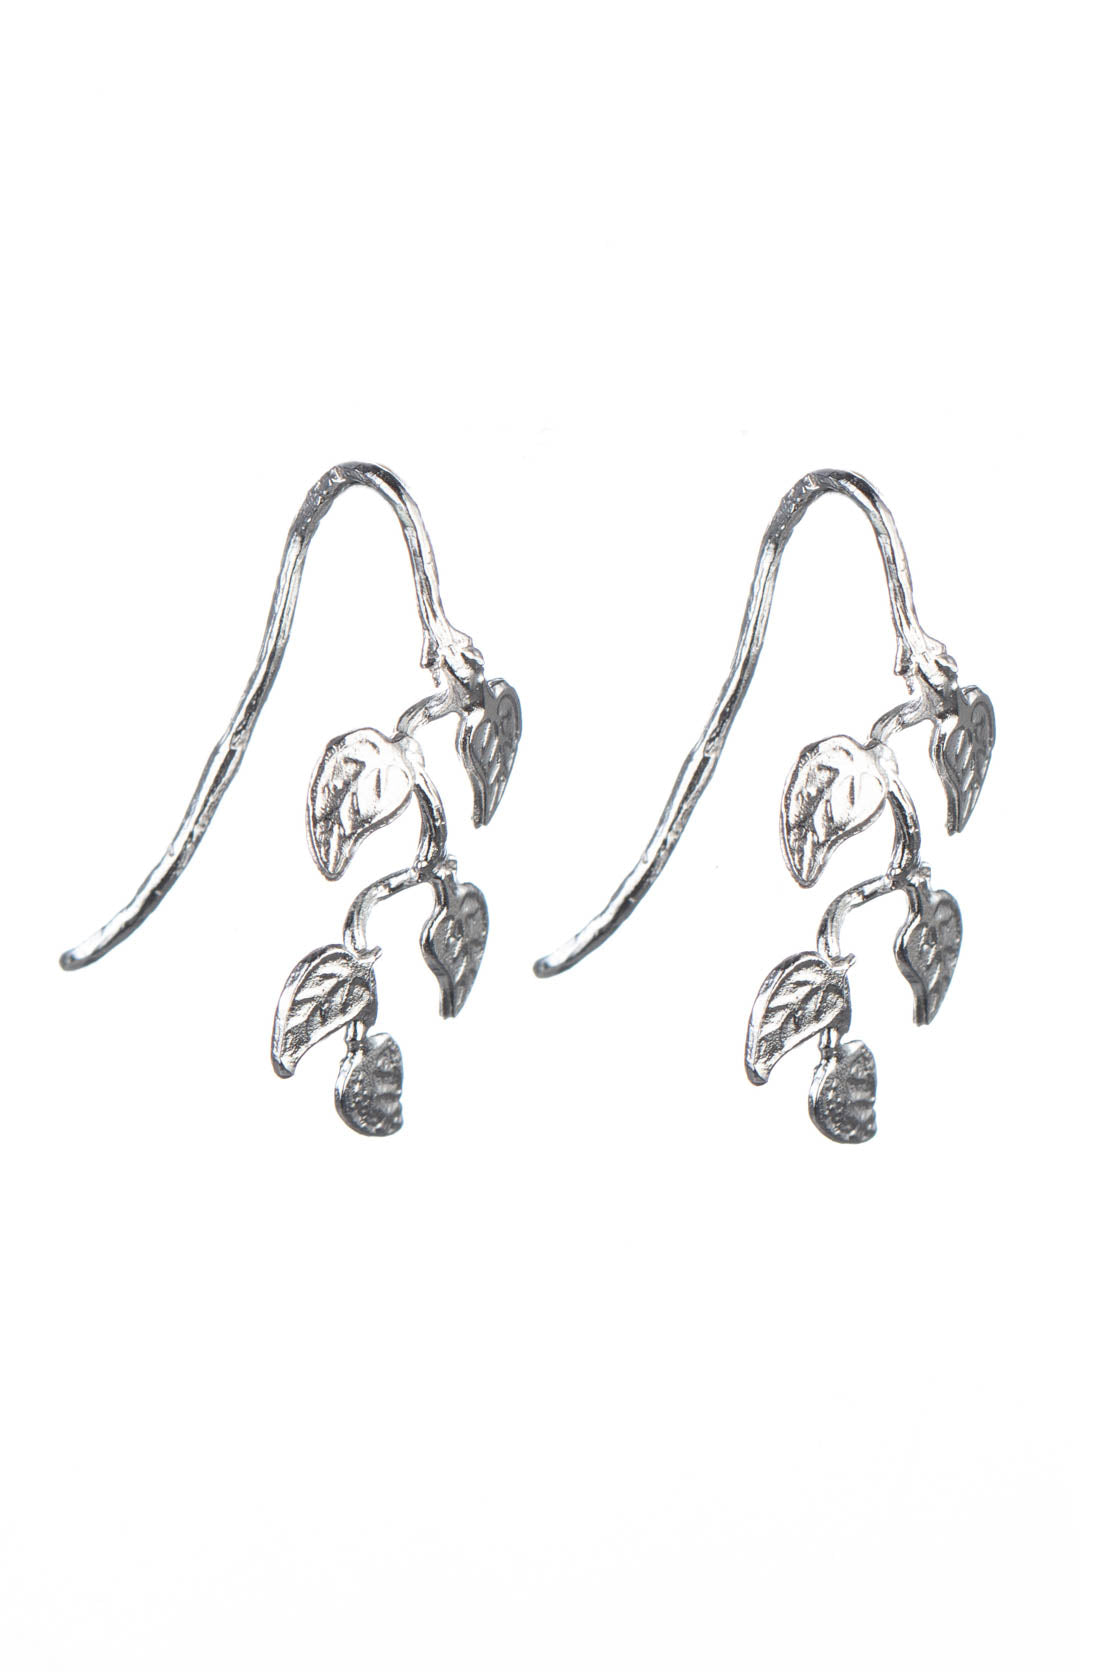 Handmade Vine Leaf Earrings on Hooks